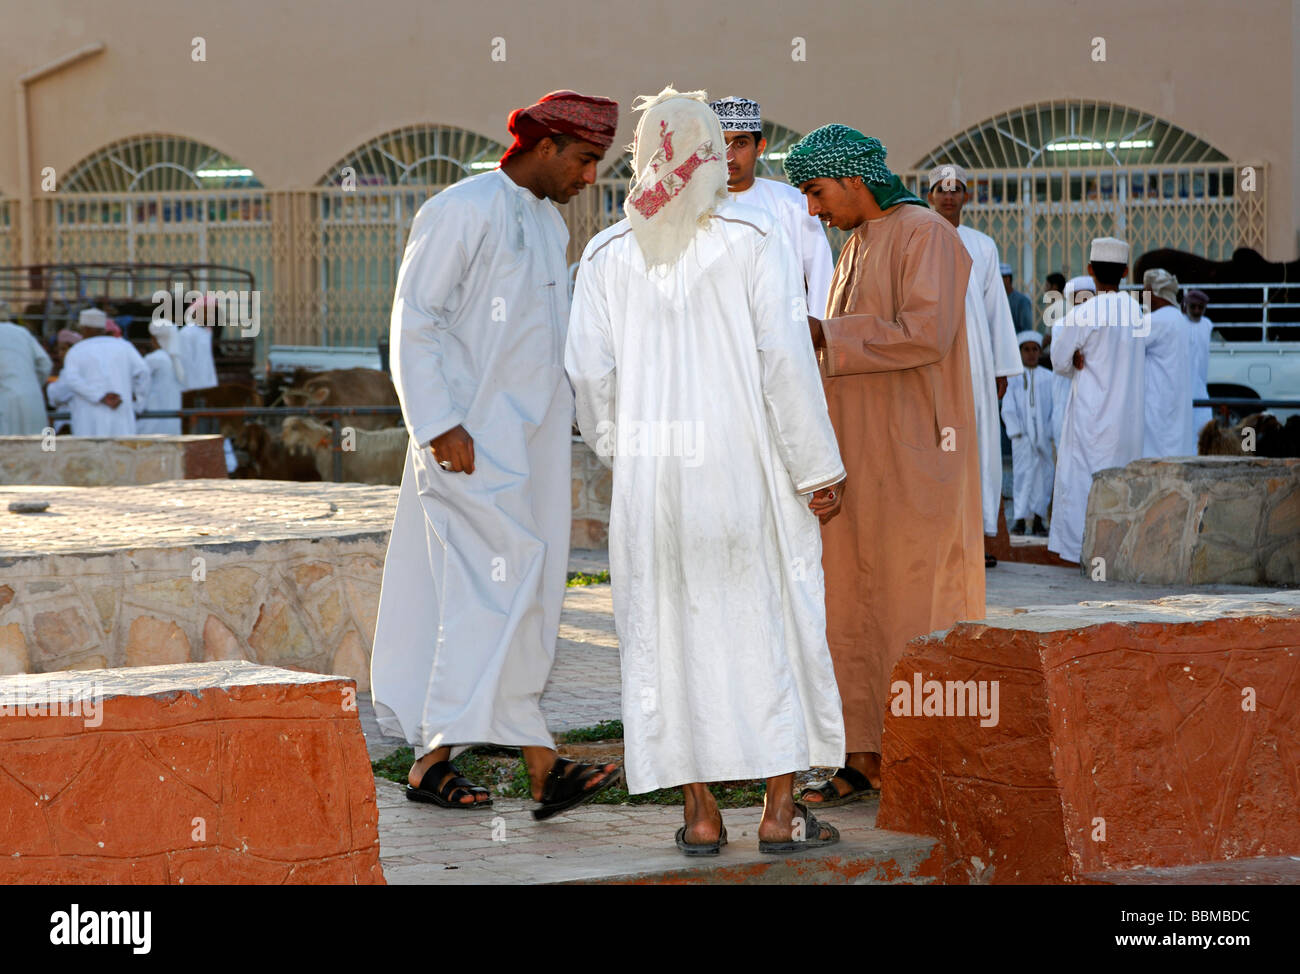 Locales típicos, dishdasha hombre vestido con túnica blanca, Abu